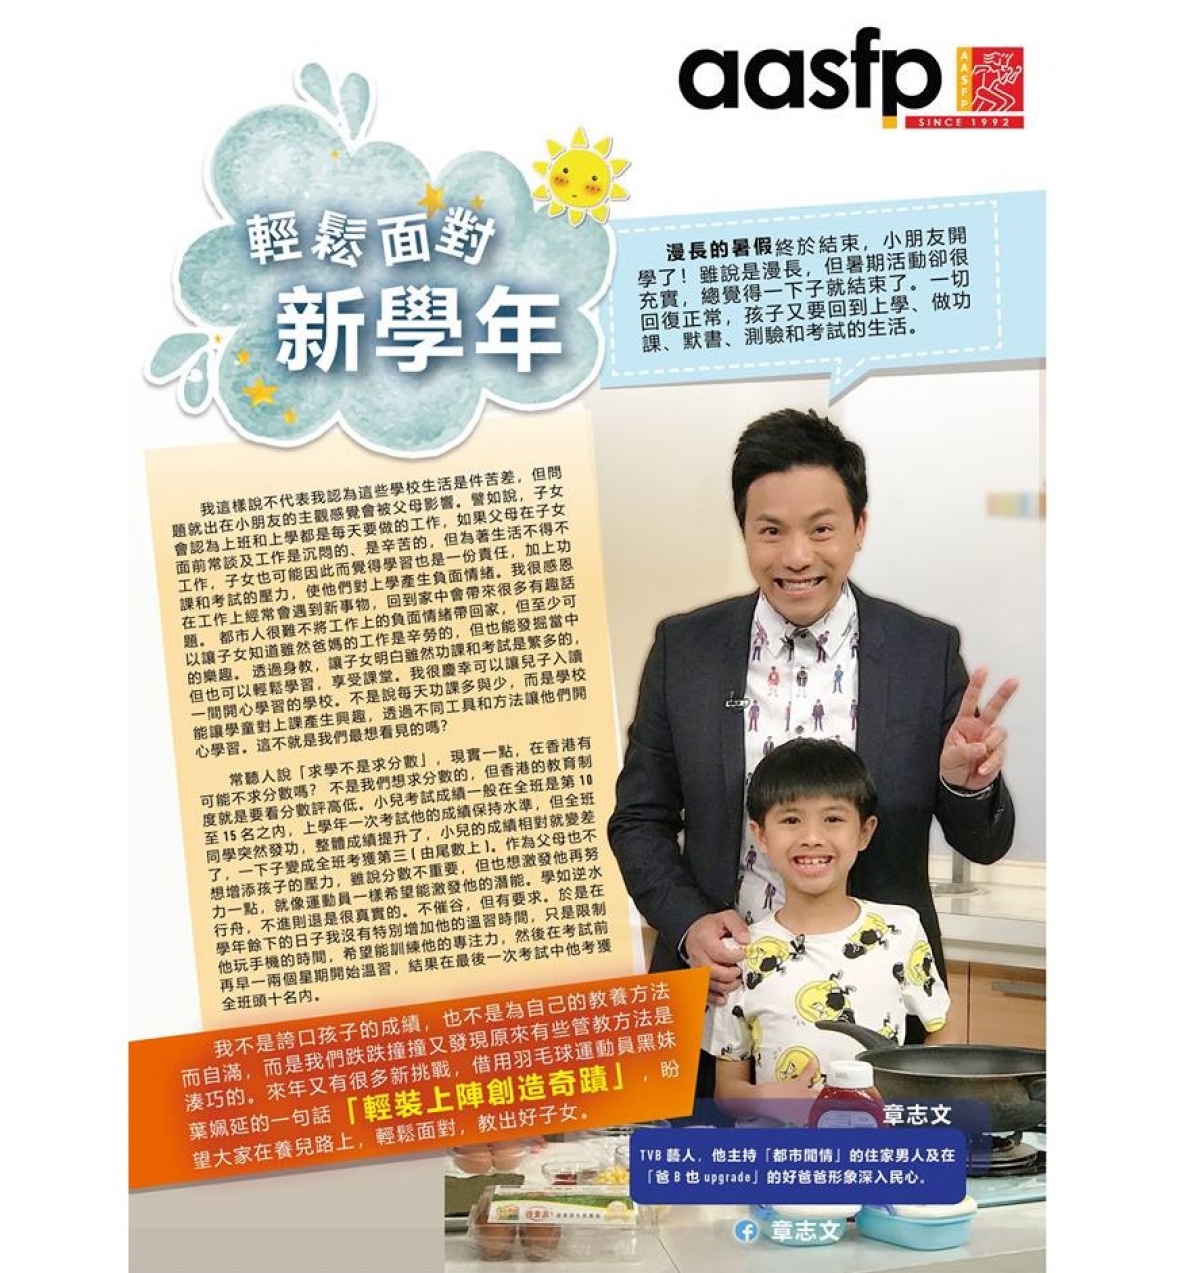 AASFP 名家專欄 章志文 第二期專欄繼續為大家分享育兒心得